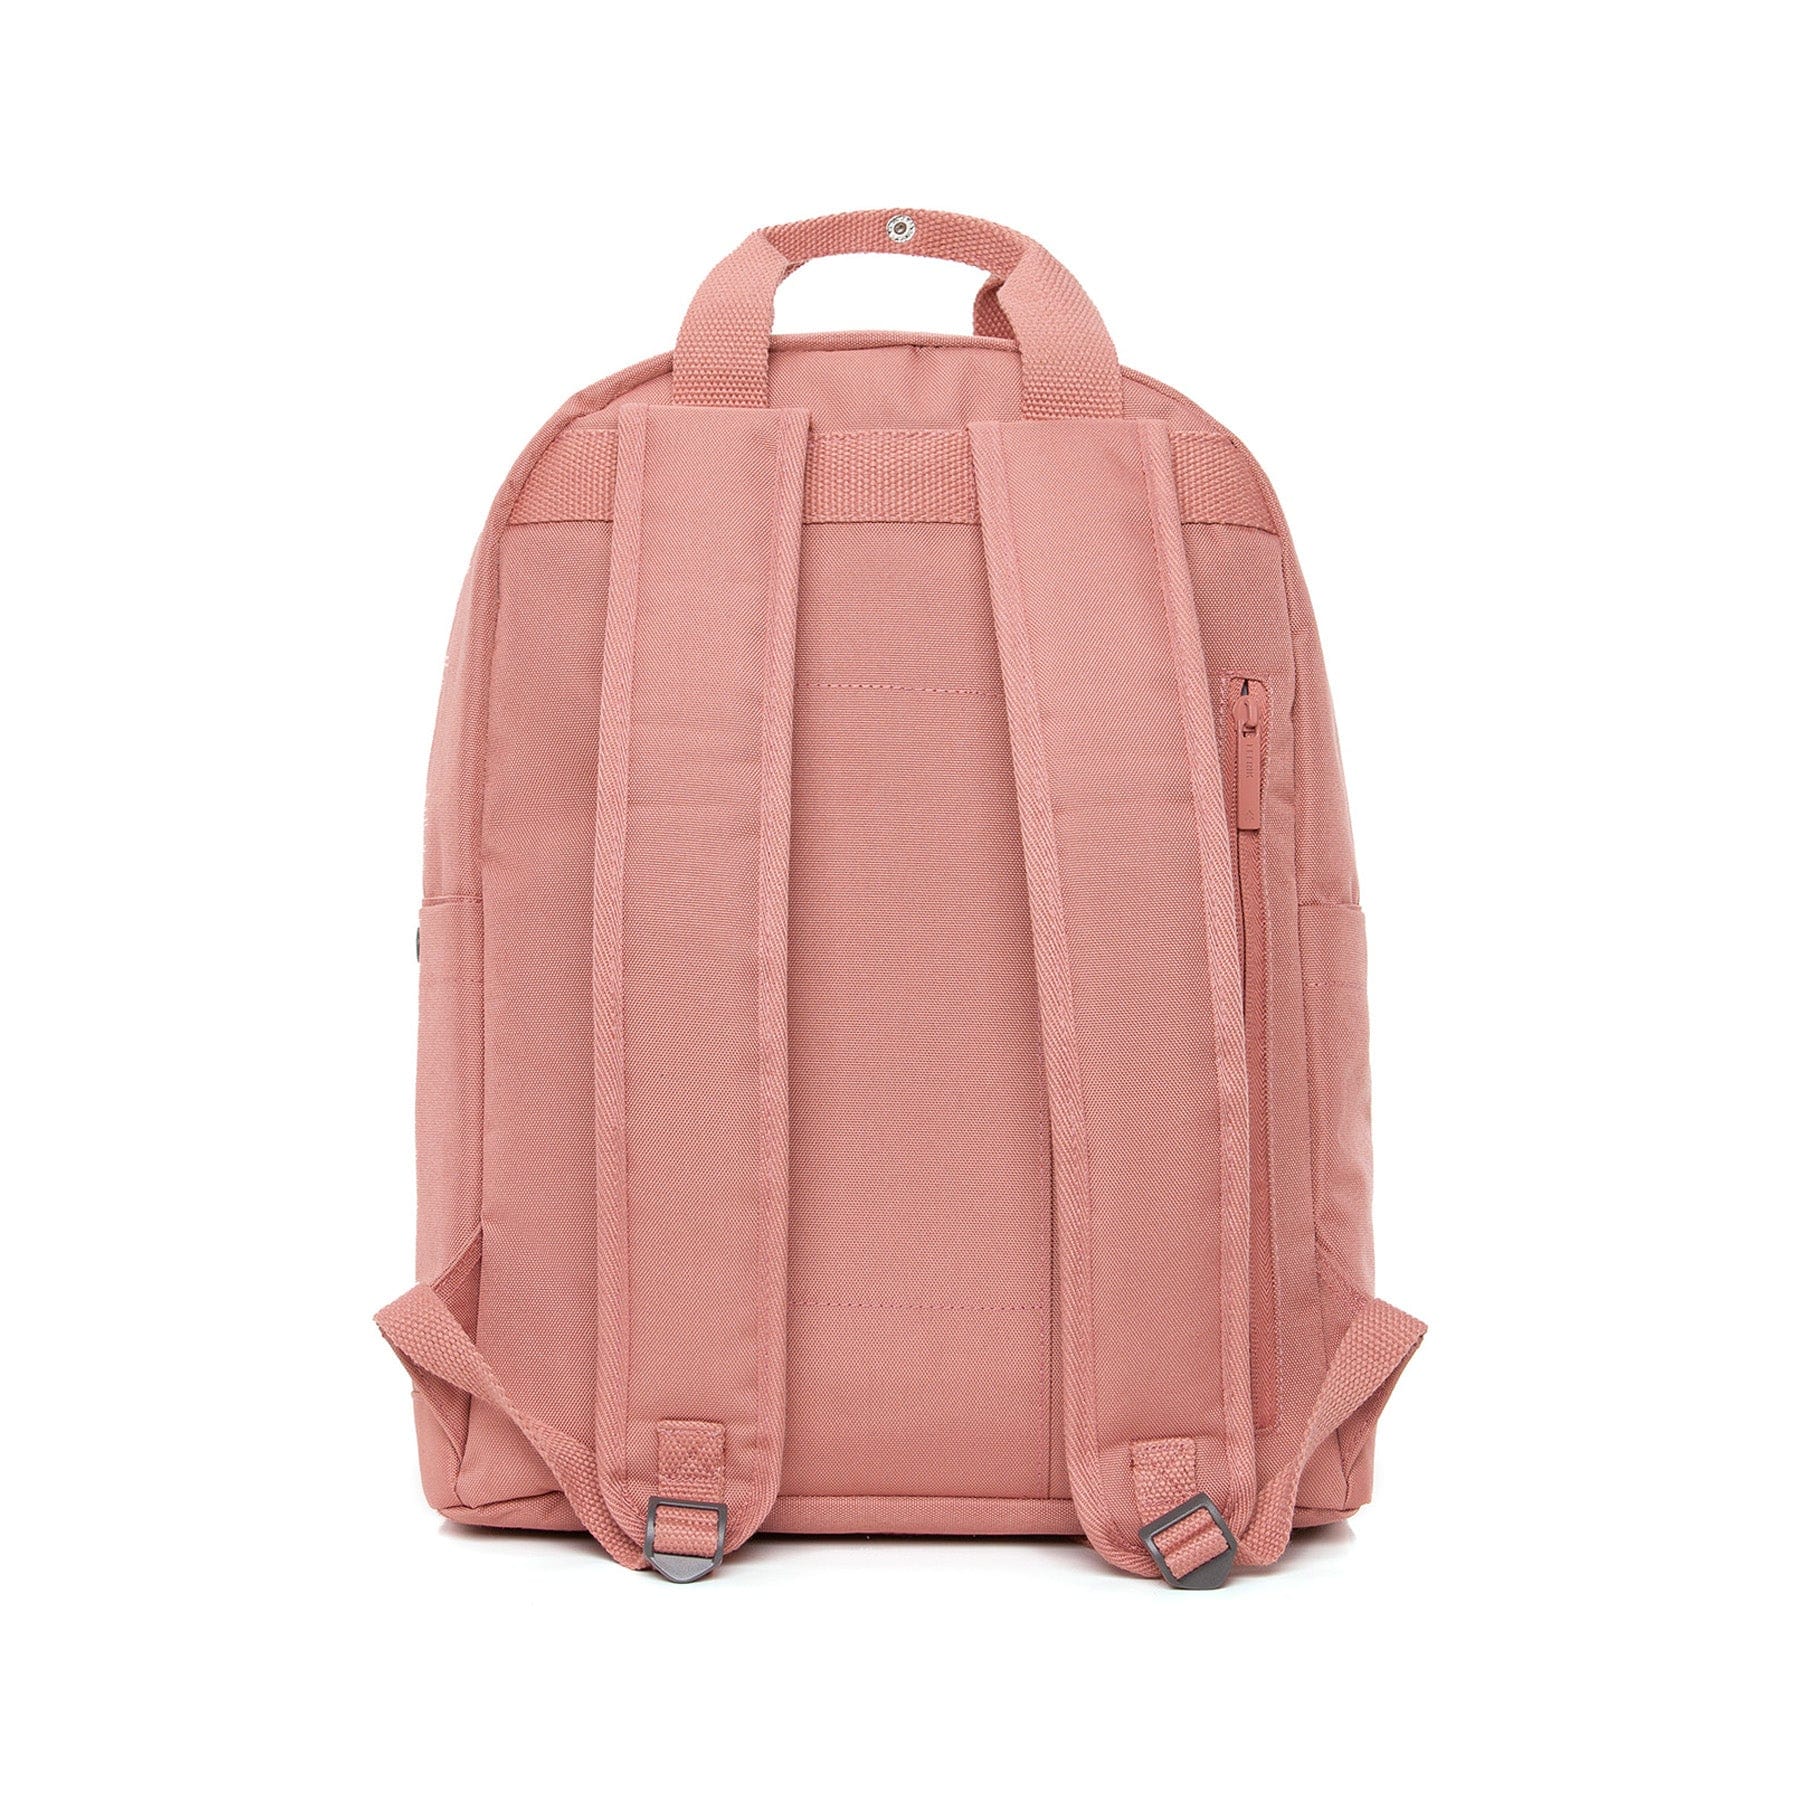 Capsule backpack dusty pink